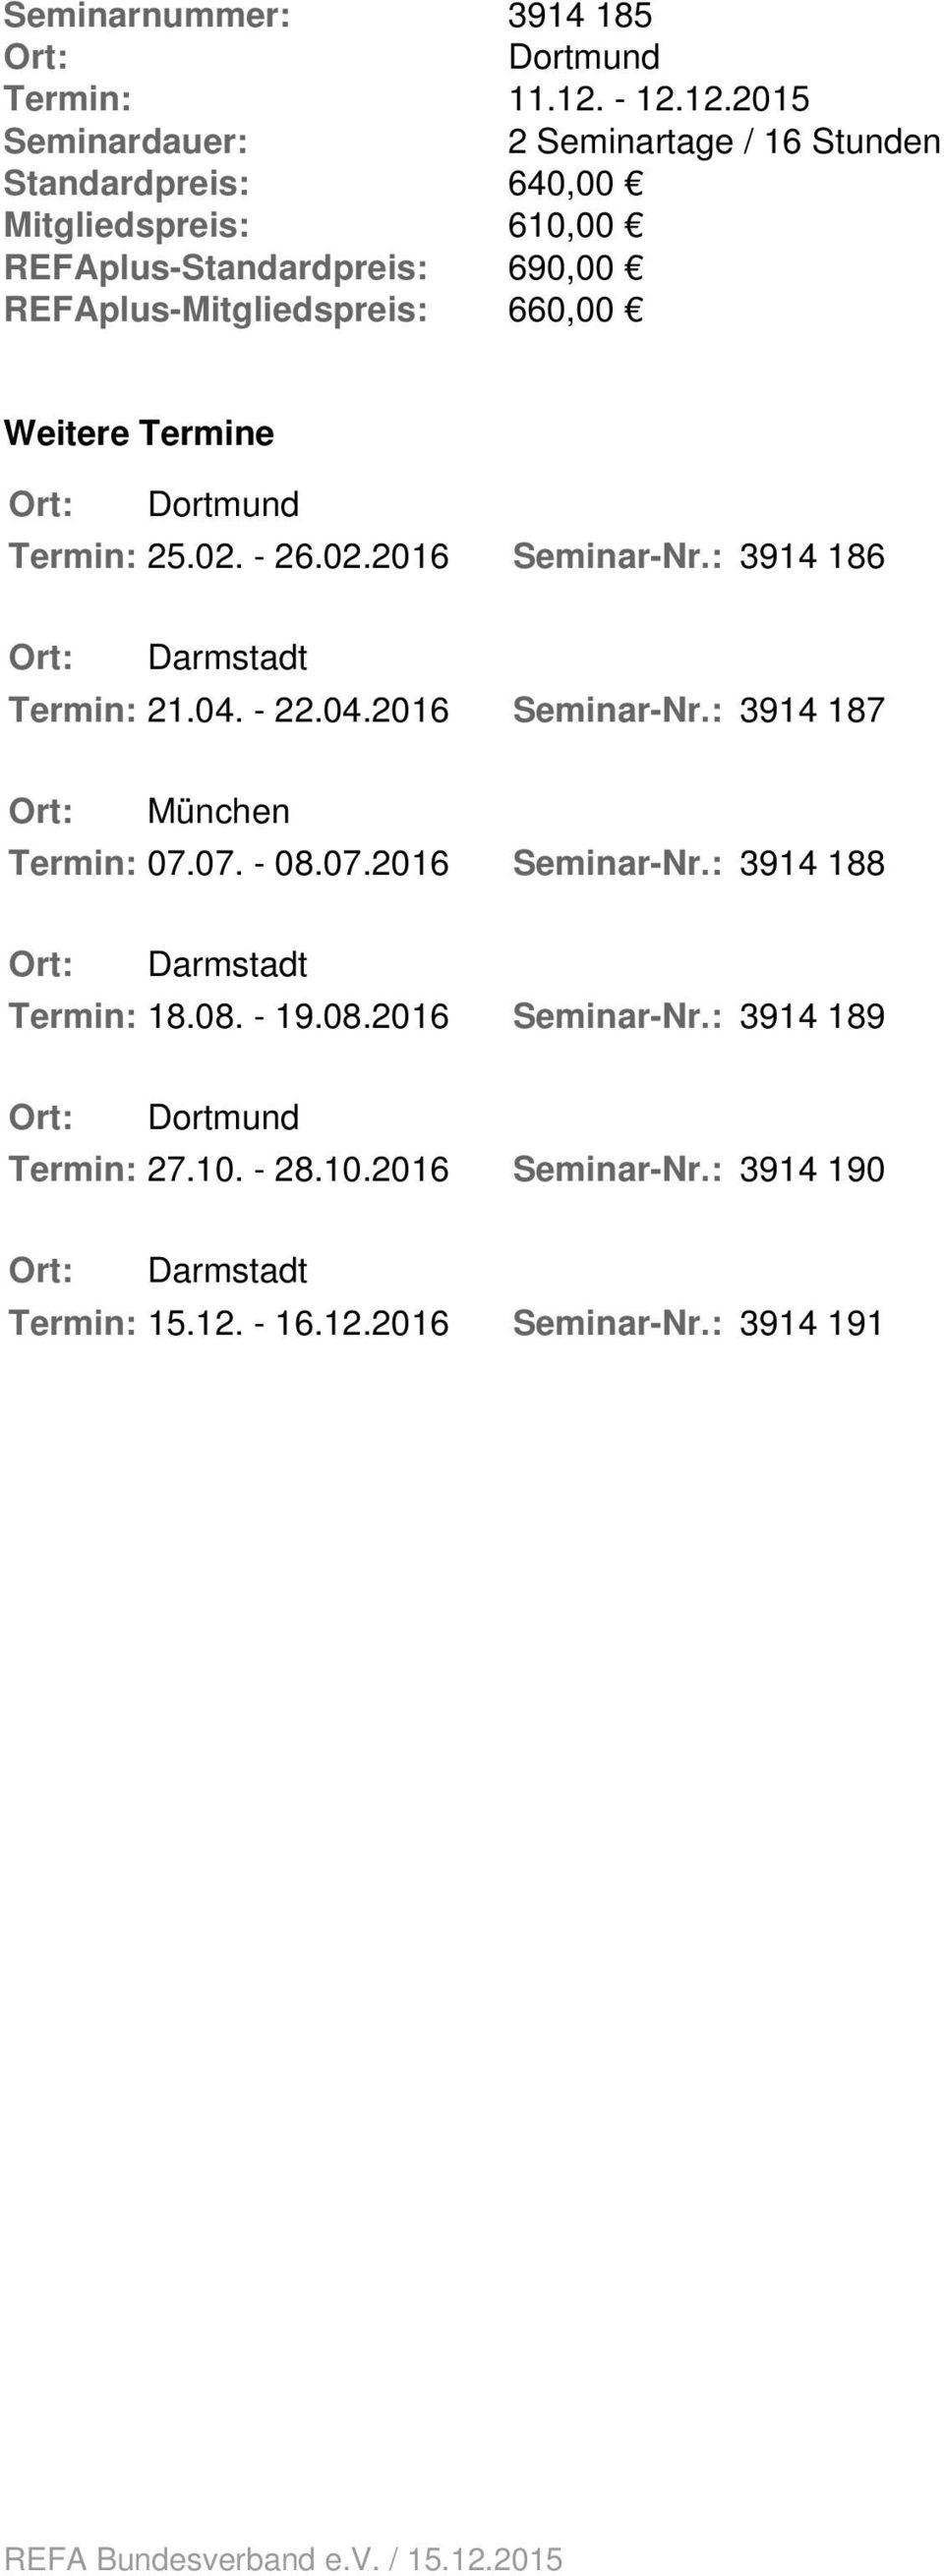 Weitere Termine Ort: Dortmund Termin: 25.02. - 26.02.2016 Seminar-Nr.: 3914 186 Ort: Darmstadt Termin: 21.04. - 22.04.2016 Seminar-Nr.: 3914 187 Ort: München Termin: 07.